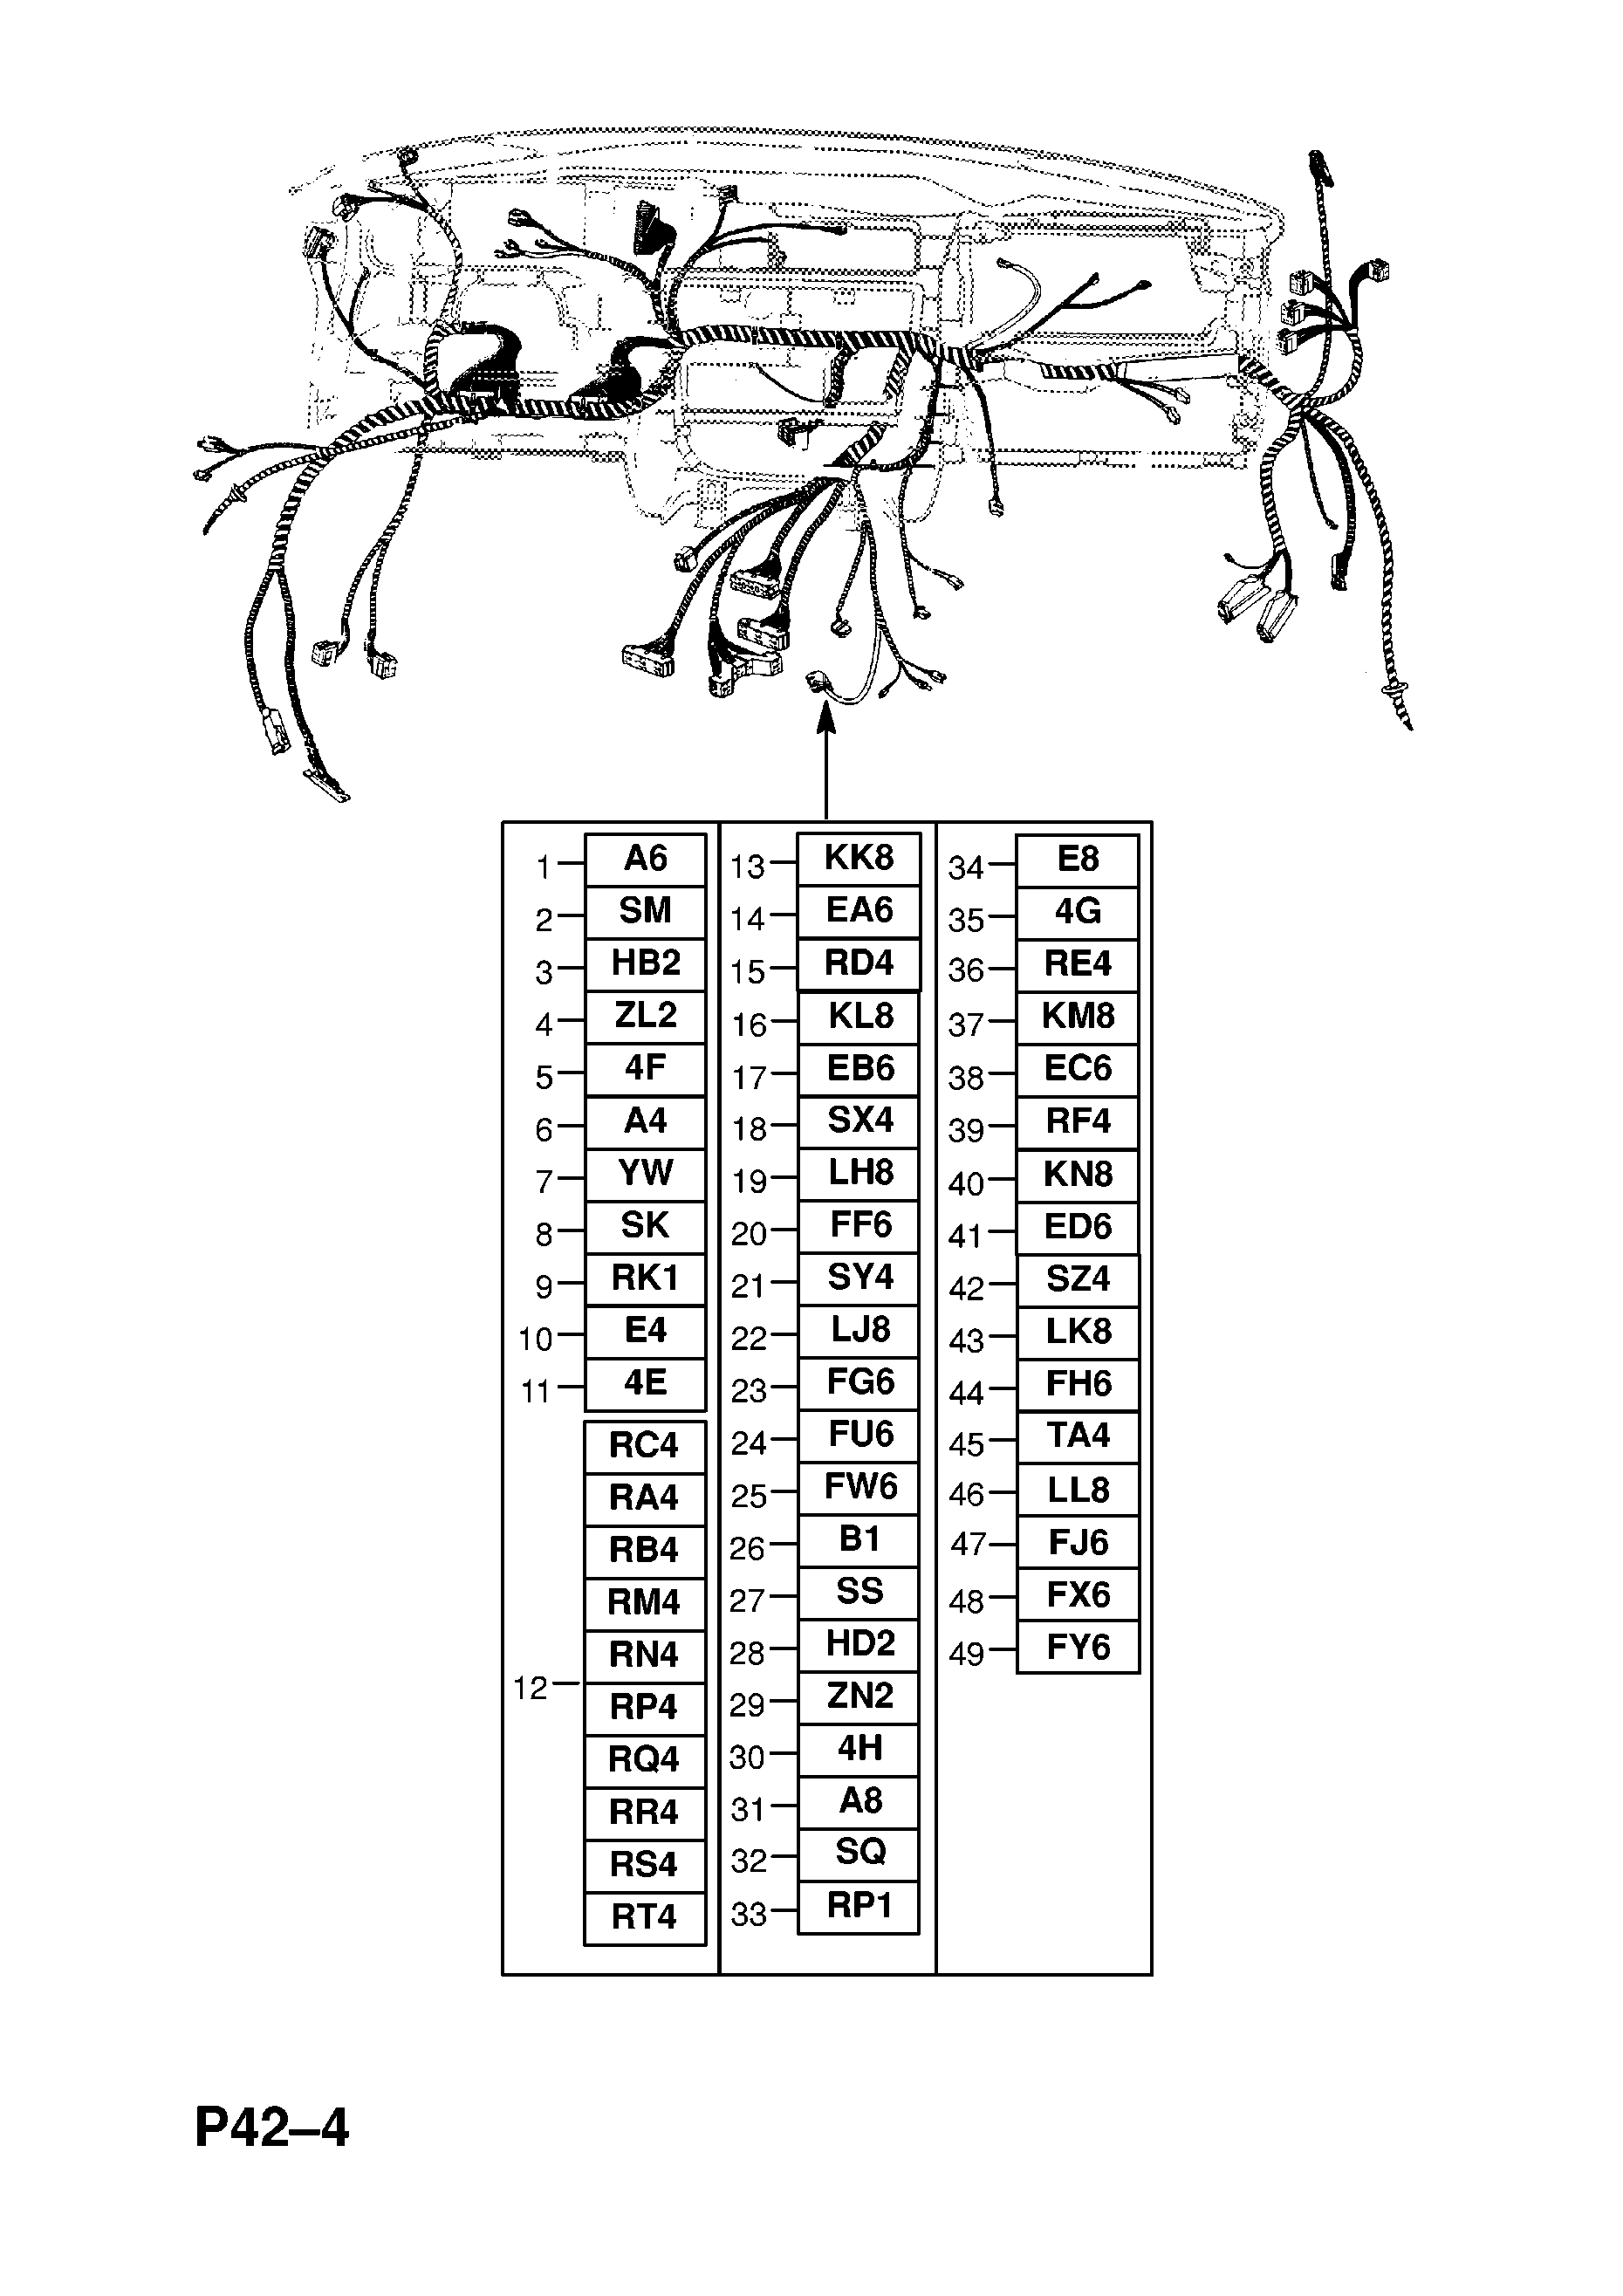 GOSTERGE TABLOSU KABLO DEMETI (DEVAM EDIYOR) <small><i>[20SE[L96],X20SE[L96],X20XEV[L34],X25XE[L80],X30XE[L81] MOTORLAR KLIMALI, JAPONYA,TAYVAN HARIC (DEVAM EDIYOR) SALOON,ESTATE (22,26,M35,M69) LHD MANUEL SANZIMAN ILE (DEVAM EDIYOR) -X1999999 (DEVAM EDIYOR)]</i></small>